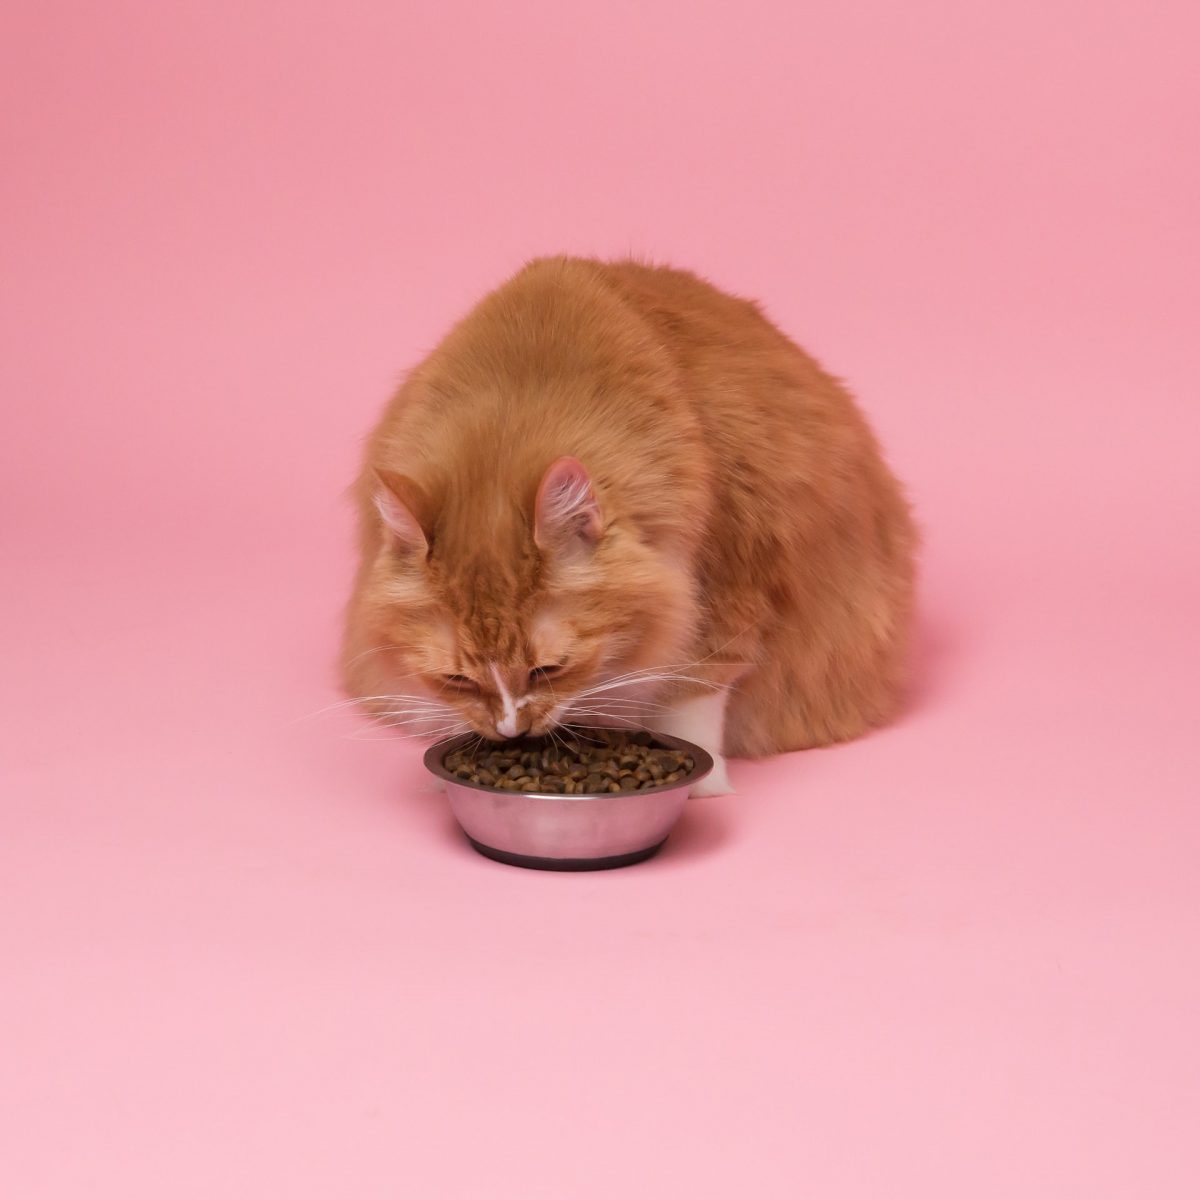 แมวดมอาหารแต่ไม่ยอมกิน, โรคช่องปากในแมว, โรคช่องปากอักเสบในแมว, โรคแมว, โรคเหงือกอักเสบ, โรคช่องปากอักเสบ